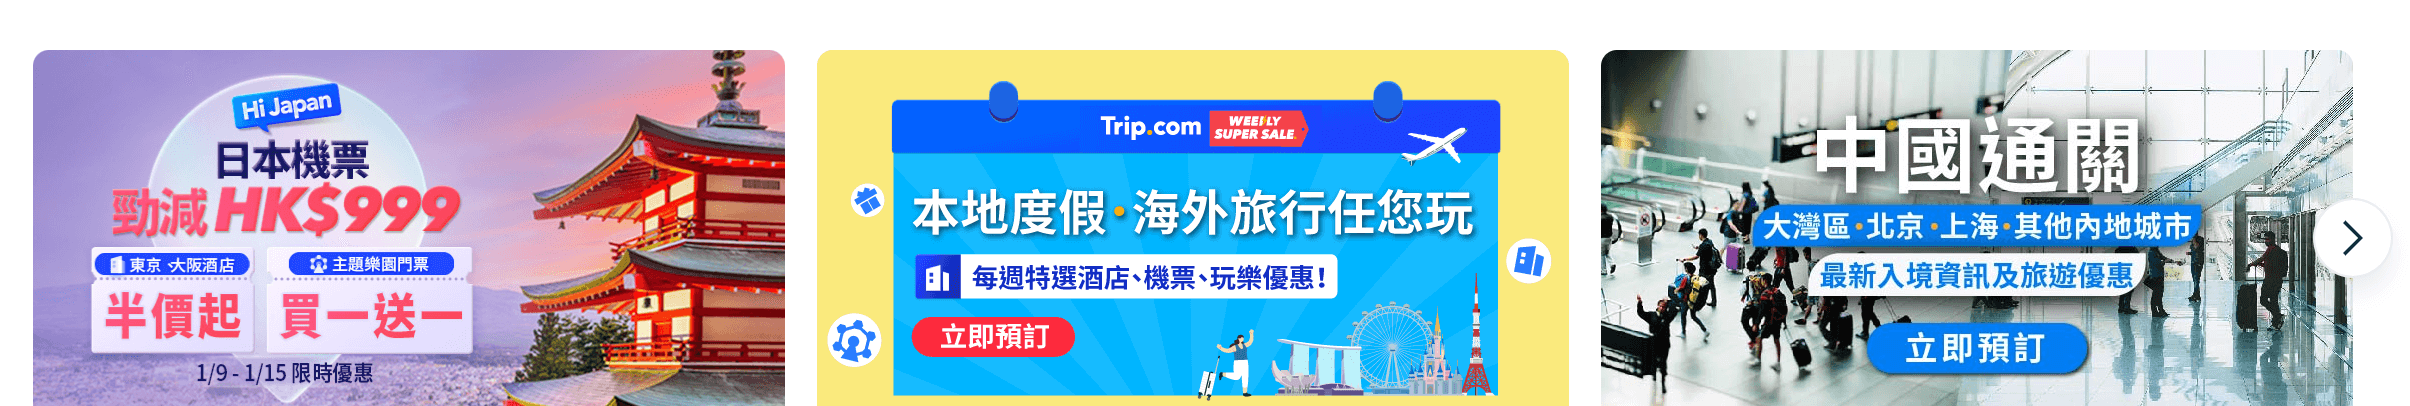 Trip.com 香港獨家 X 韓國江原道政府：限定狂搶滑雪玩樂體驗、酒店優惠